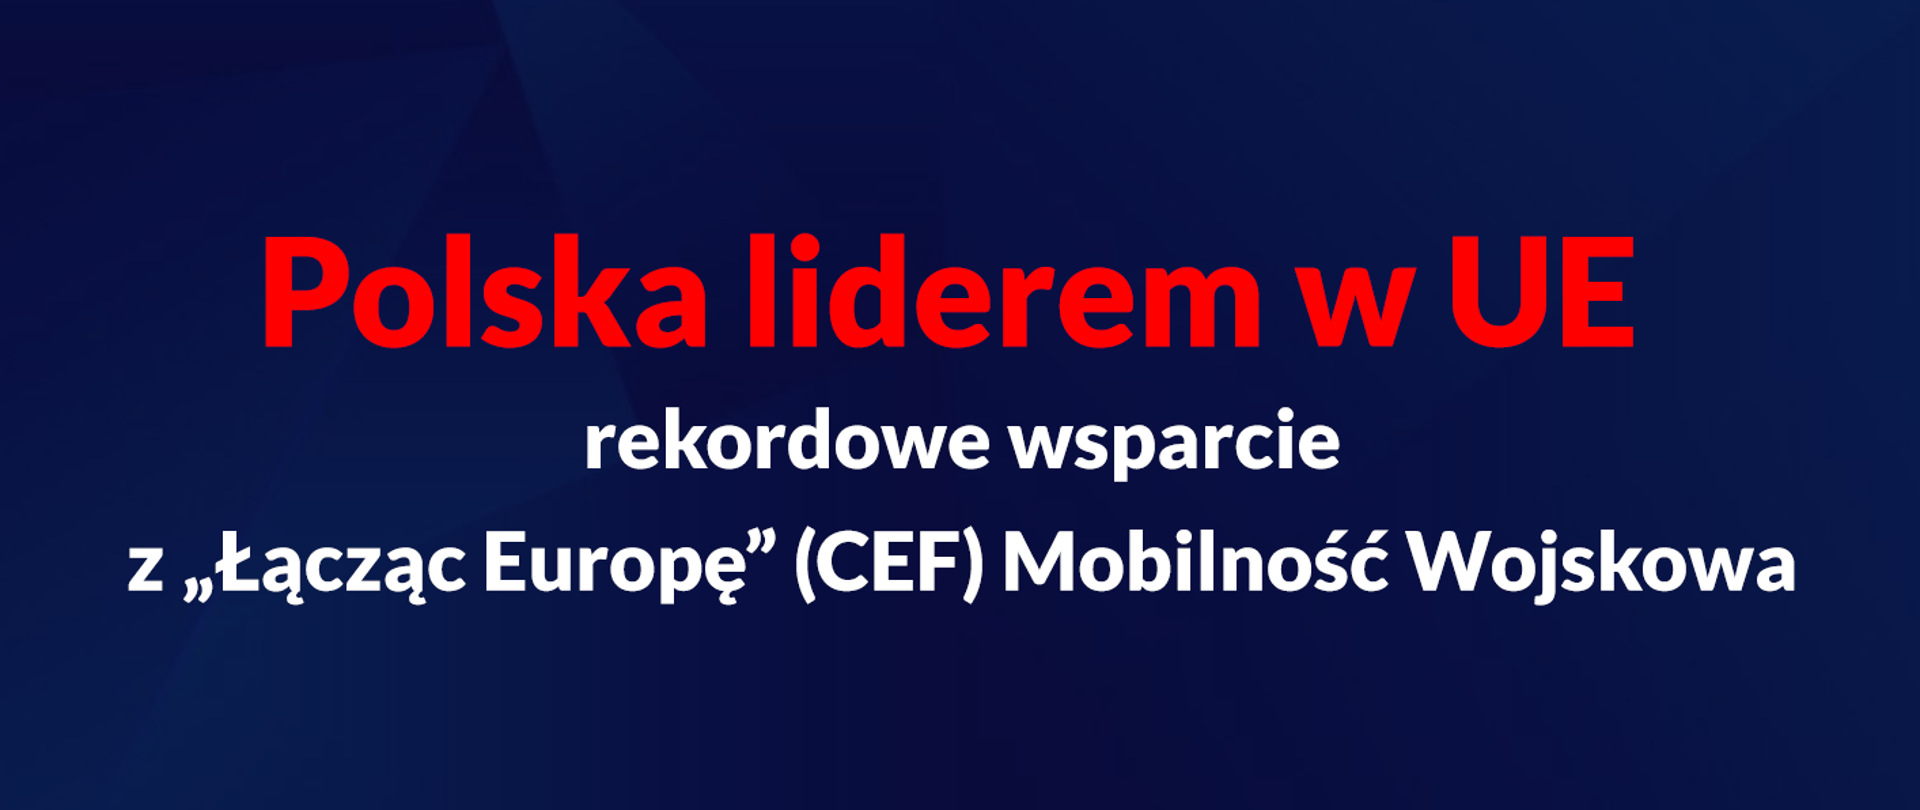 Na grafice napis: Polska liderem w UE rekordowe wsparcie z "Łącząc Europę" CEF Mobilność Wojskowa